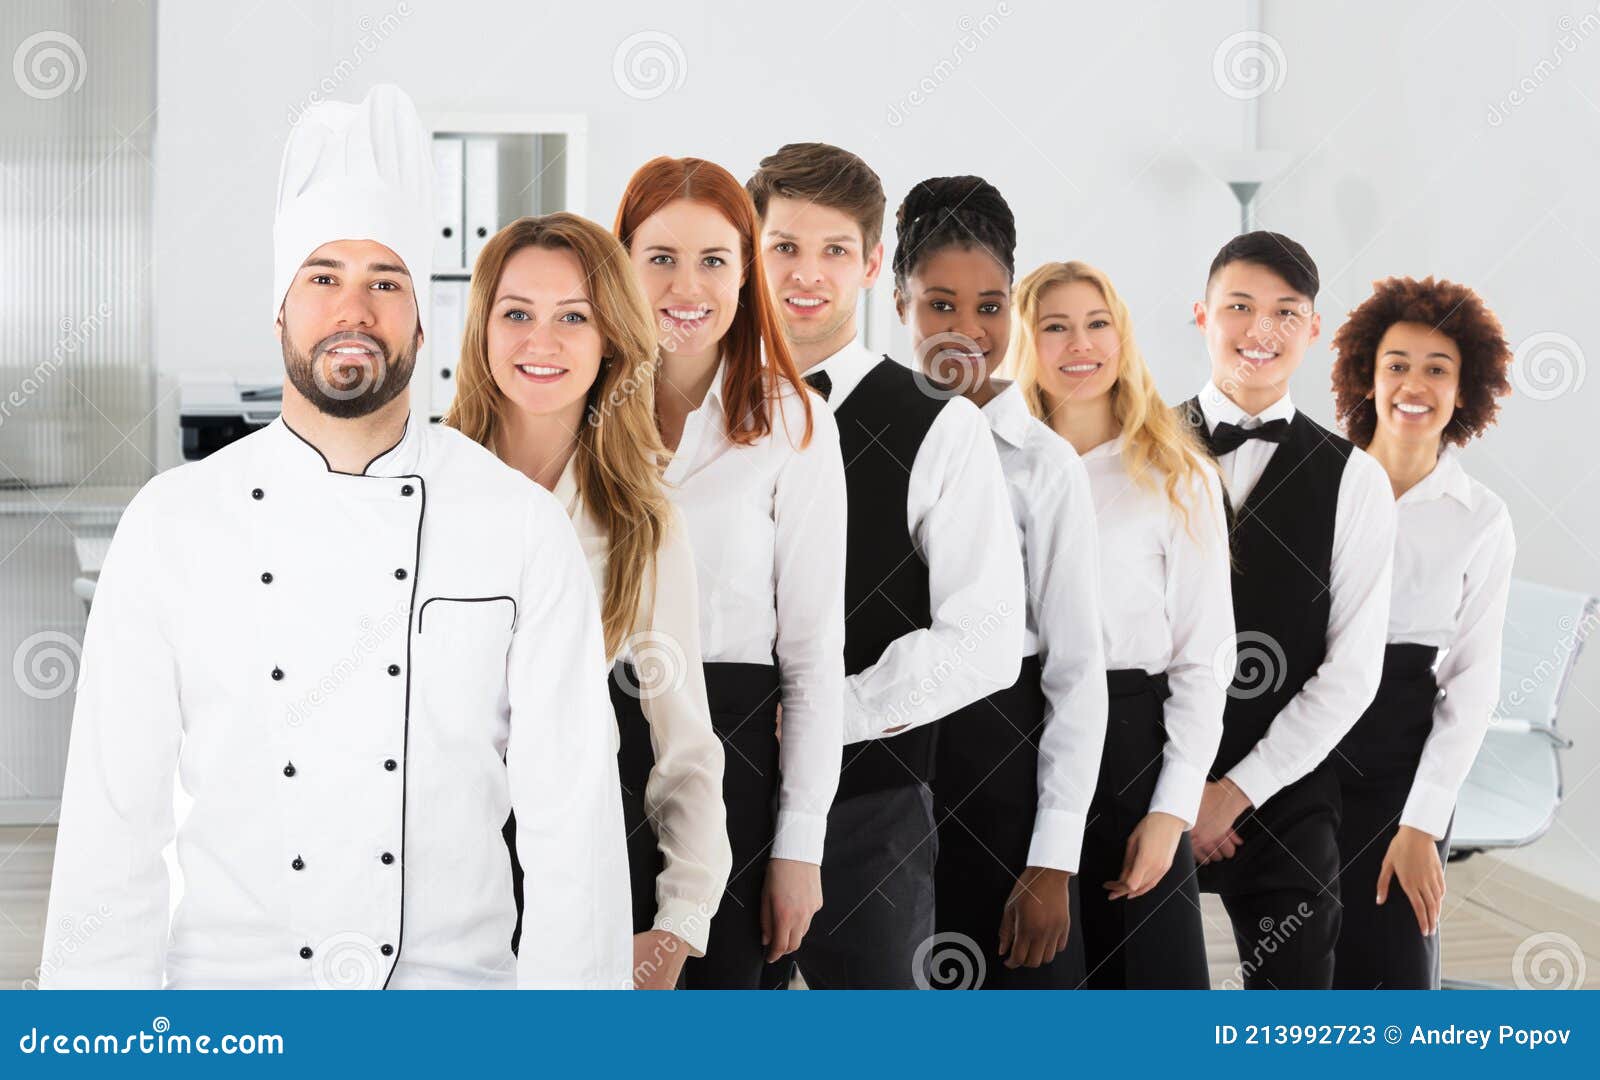 multi ethnic restaurant staff